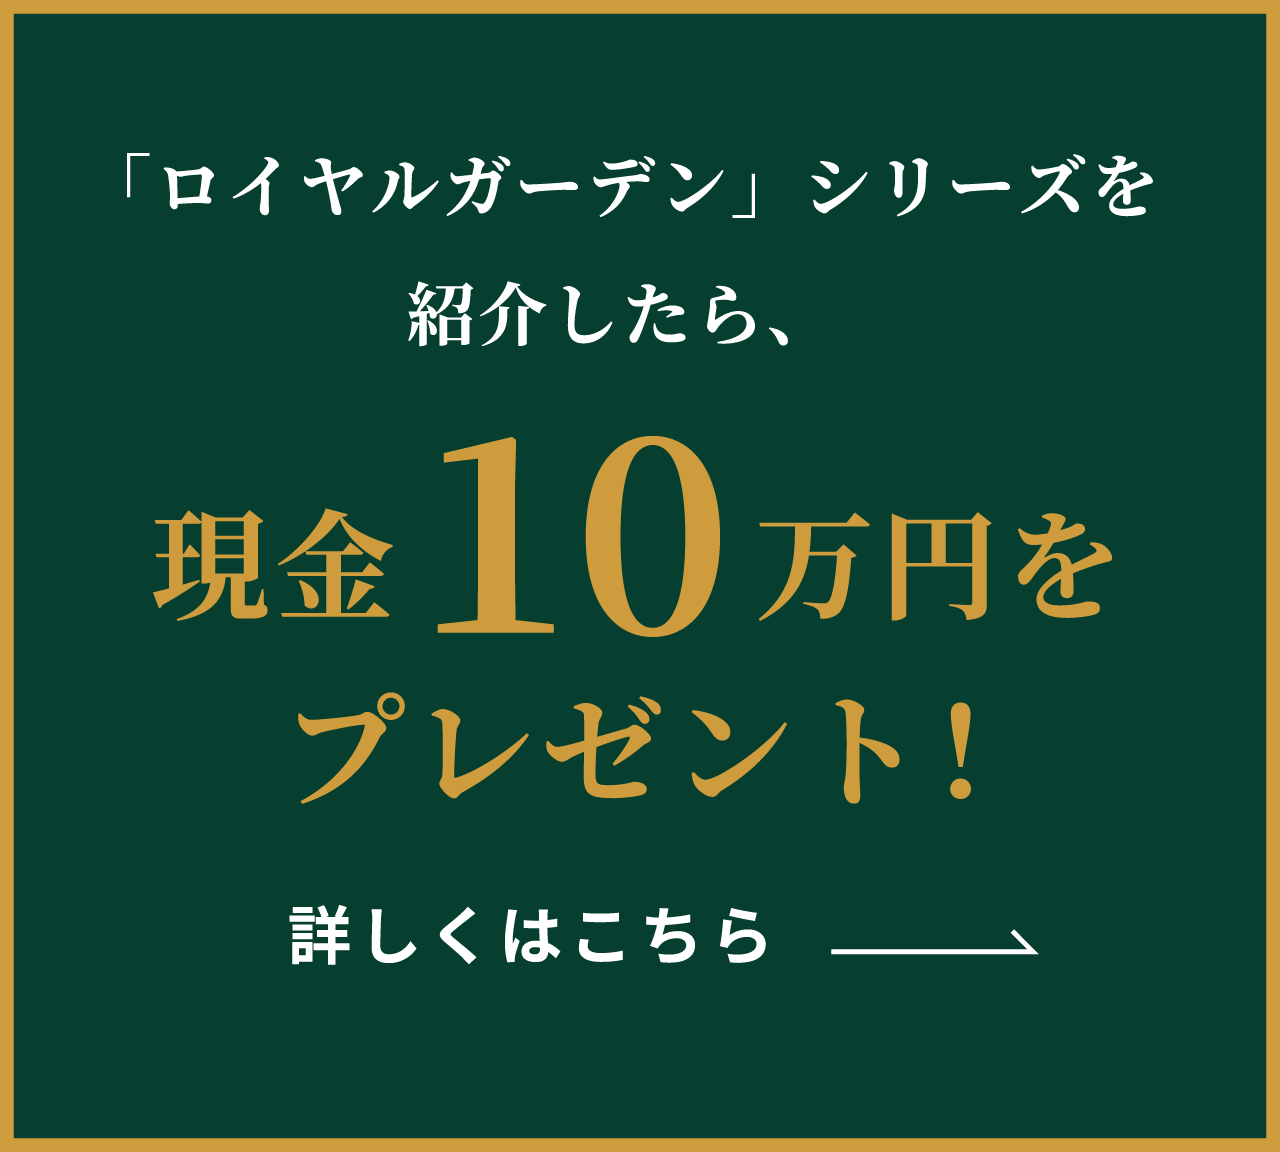 「ロイヤルガーデン」シリーズを紹介したら、現金10万円をプレゼント！